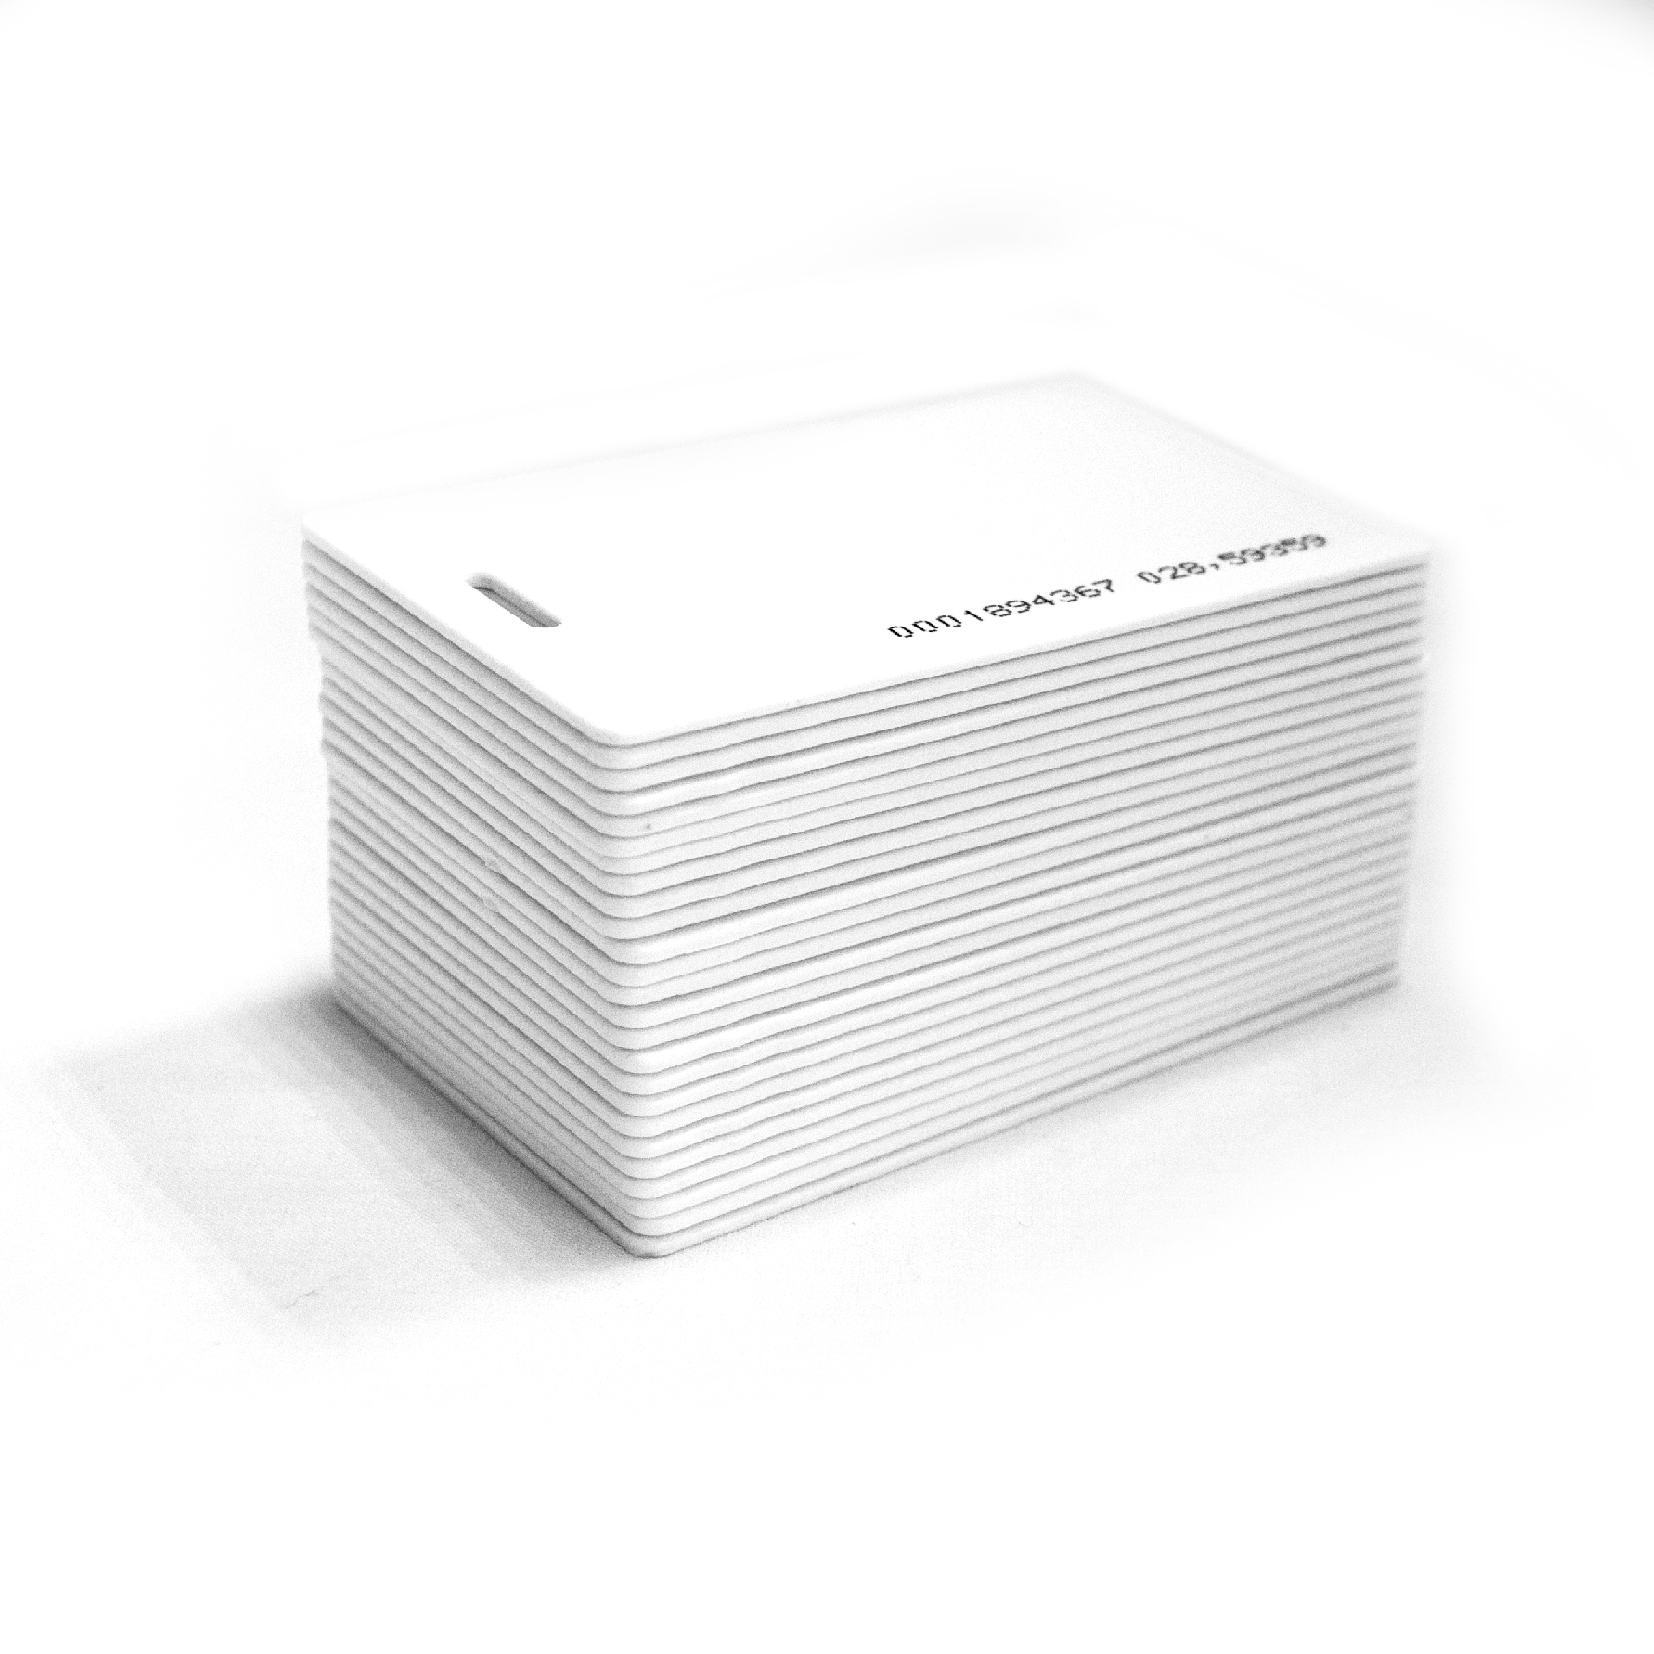 Набор пропускных карточек Slinex Proximity для считывателей с кодом Em-marine, 100 штук